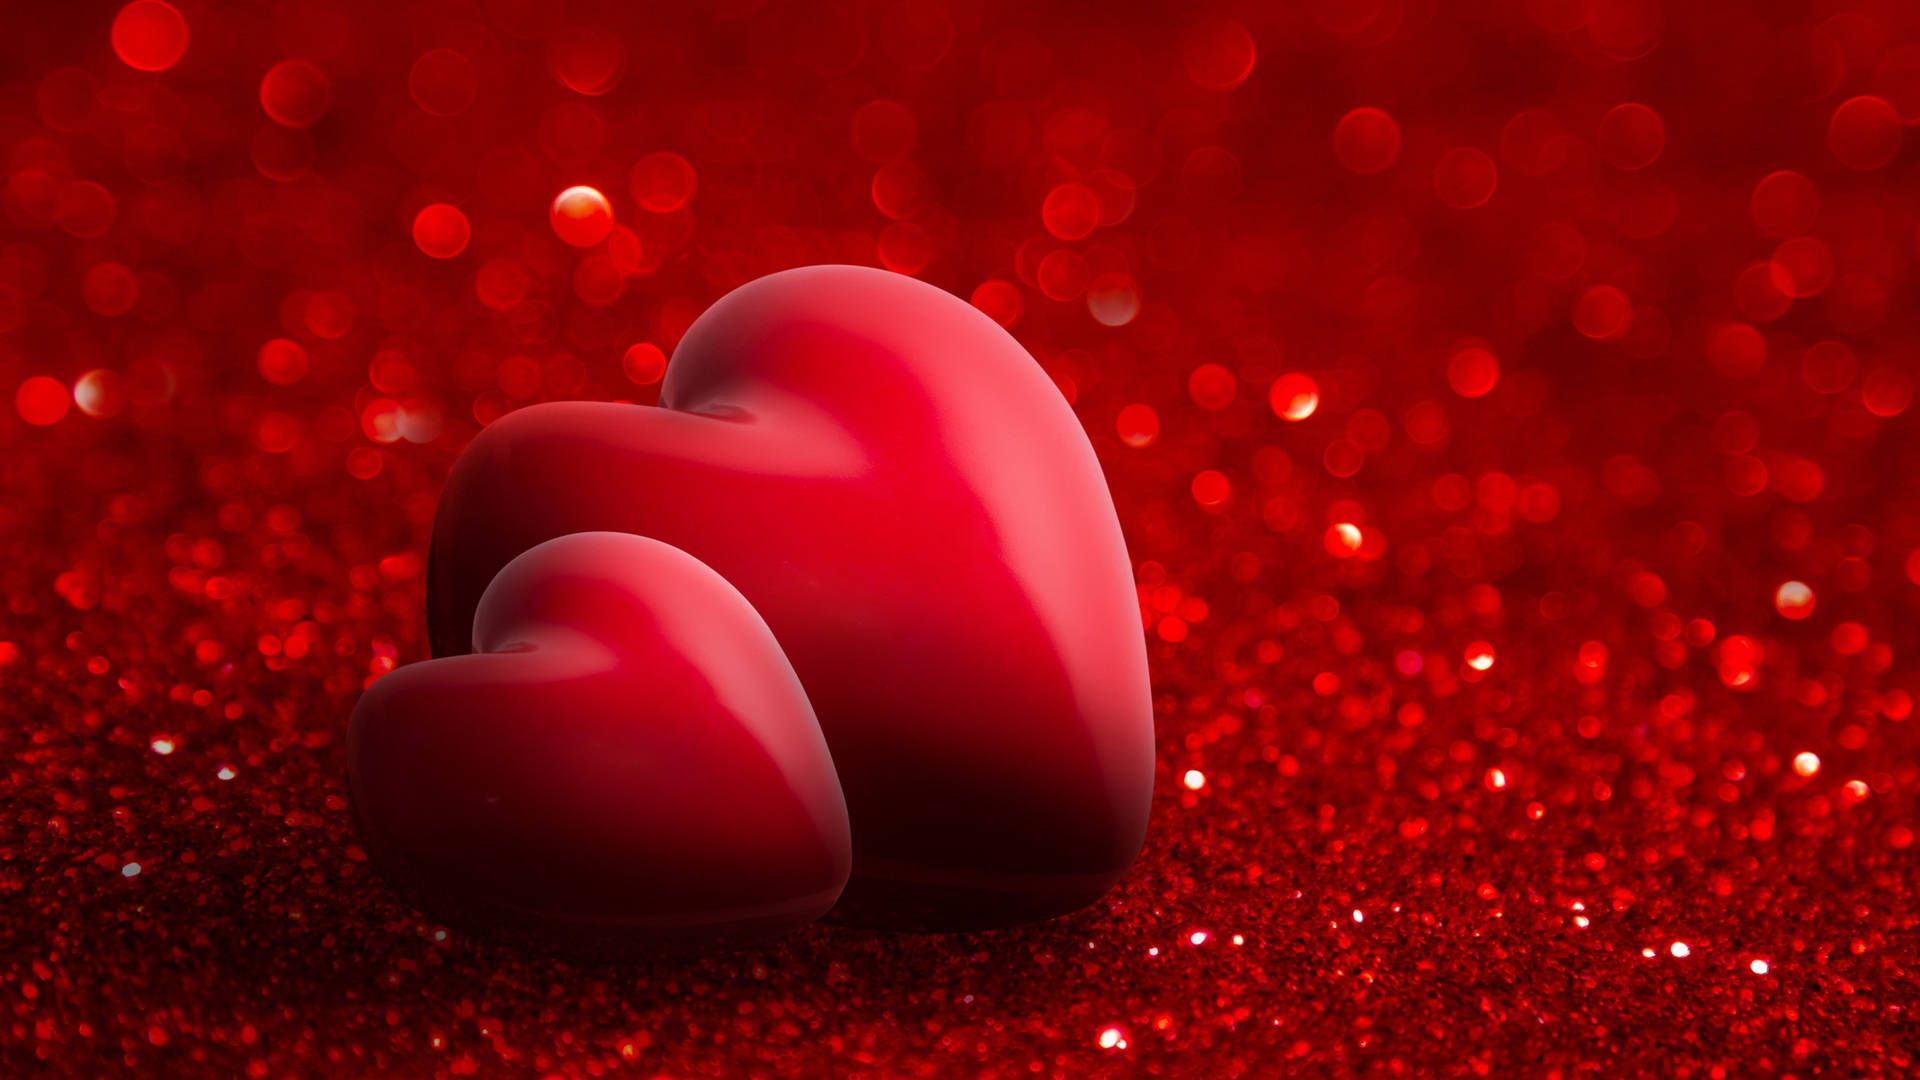  Herzen 3D Hintergrundbild 1920x1080. Downloaden Zeigensie Ihre Liebe Mit Diesem Atemberaubenden 3D Whatsapp Herz Wallpaper